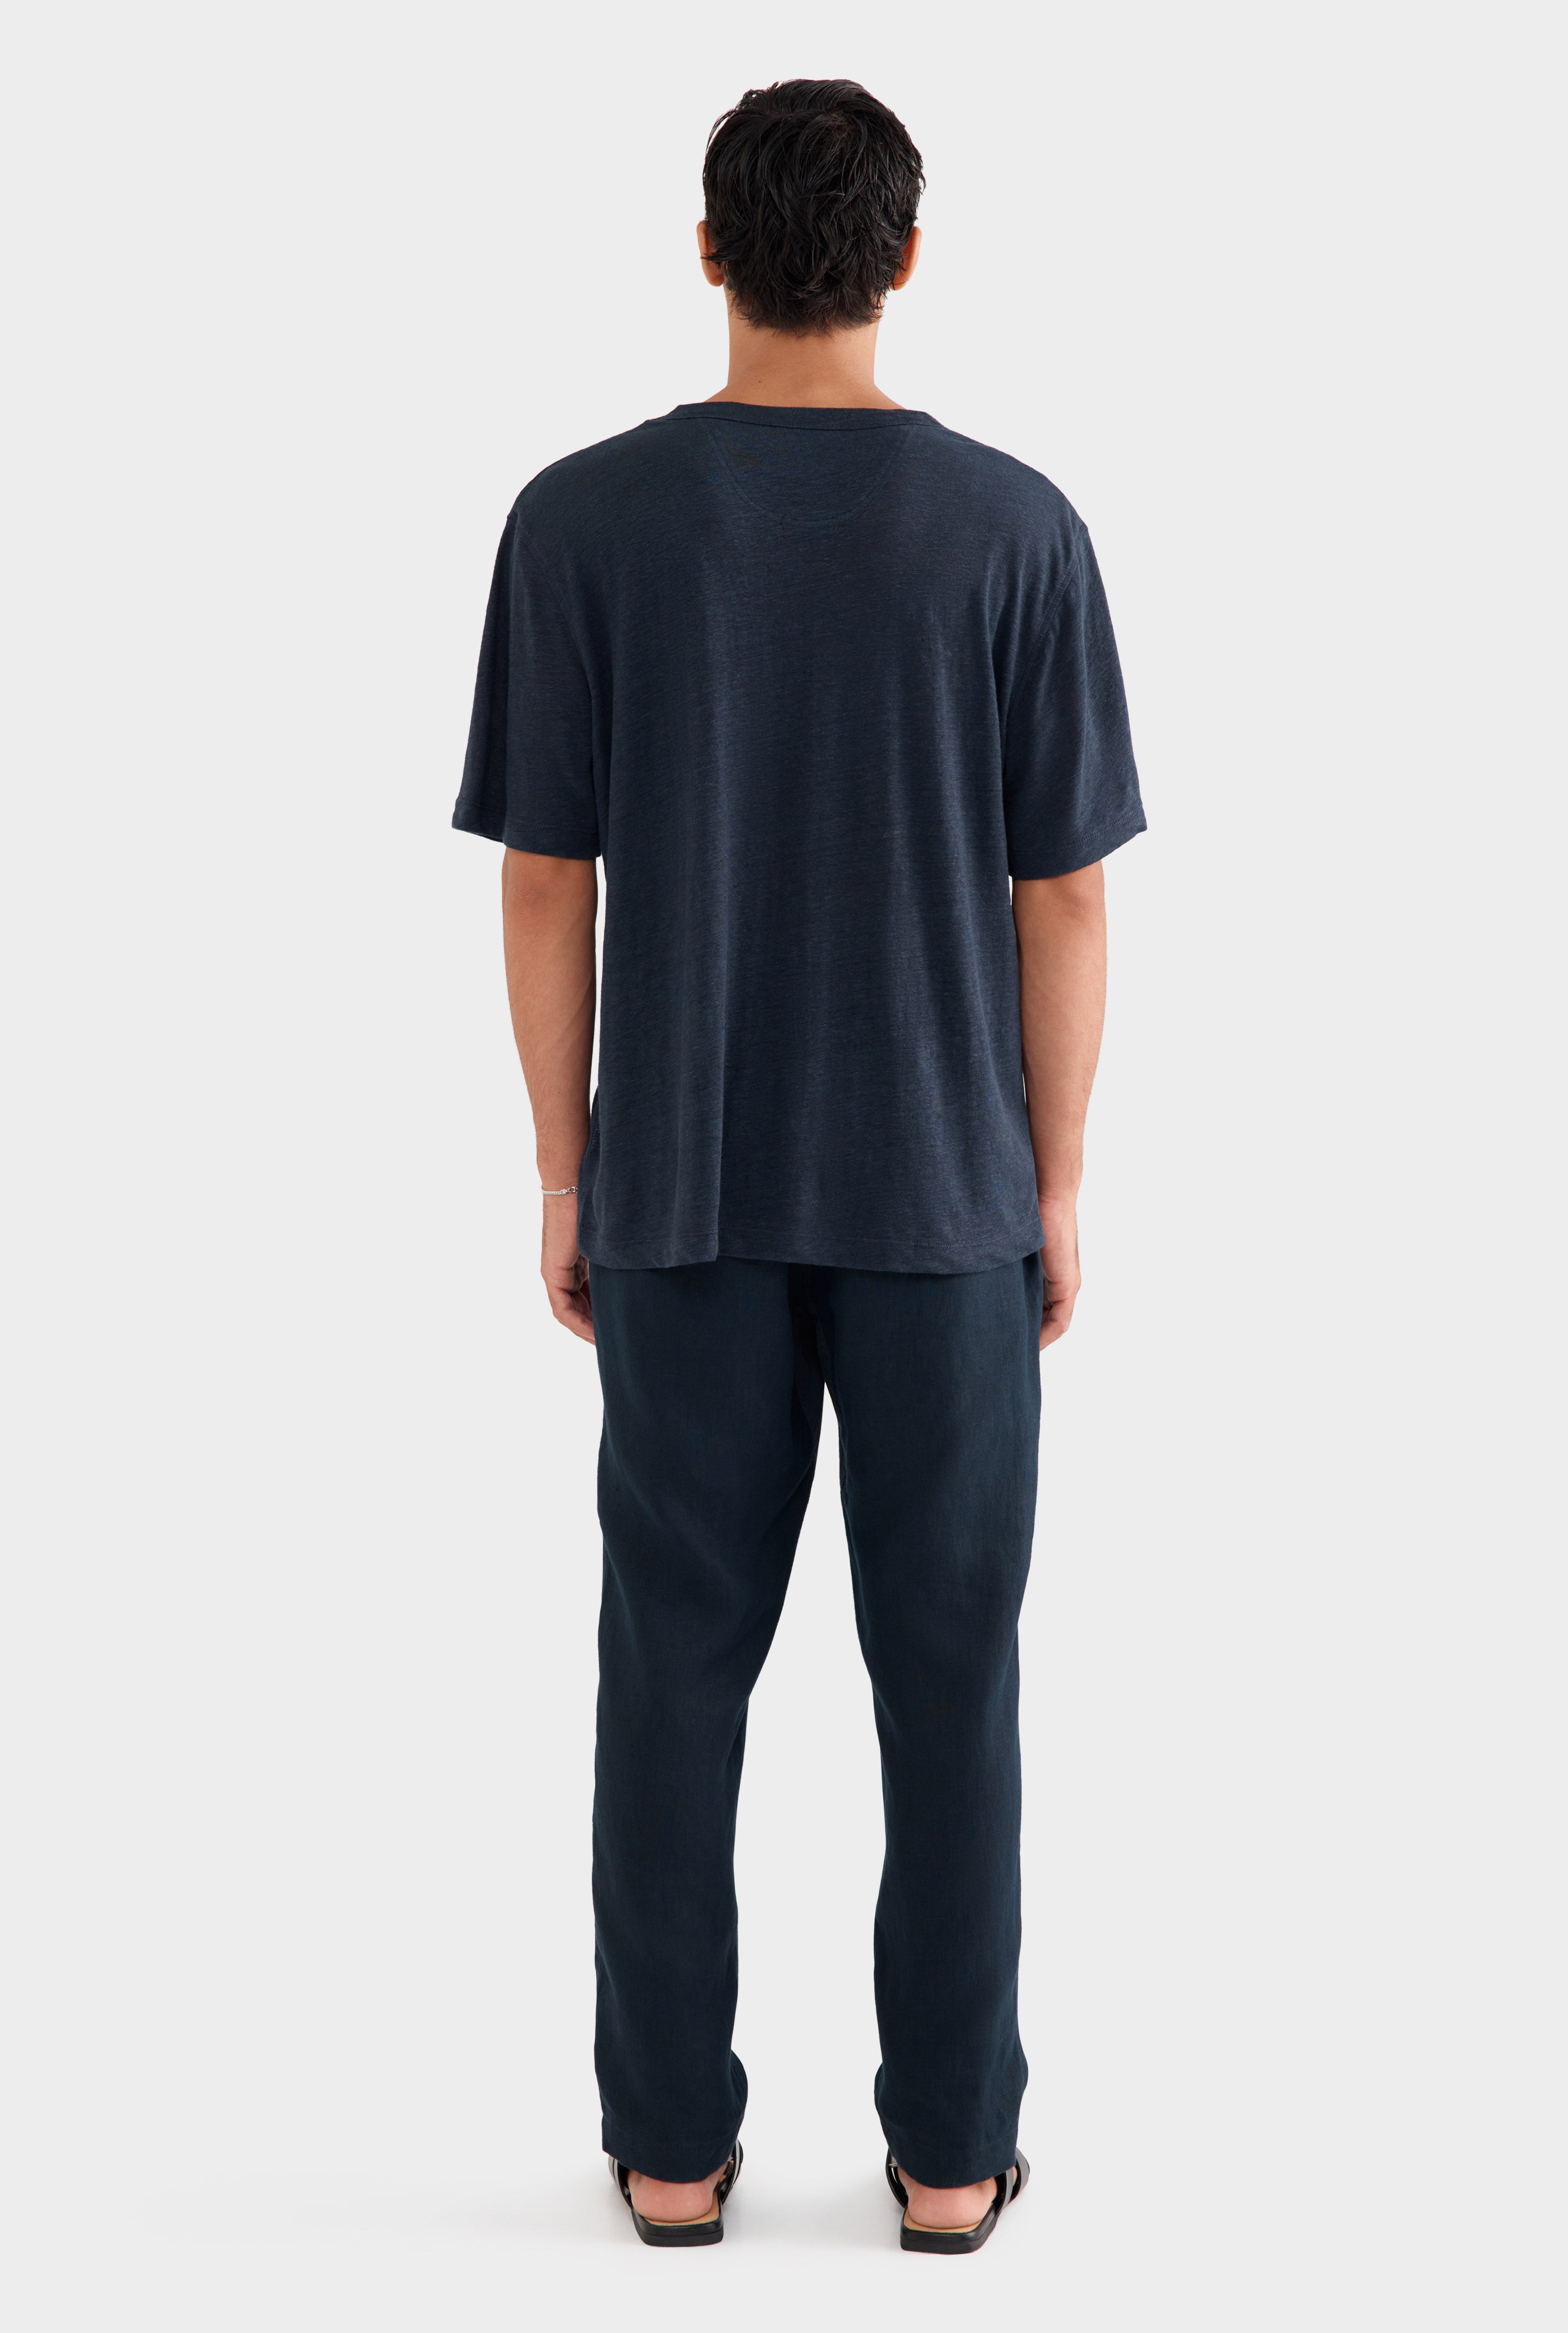 Coverstitch Linen T-Shirt - Navy